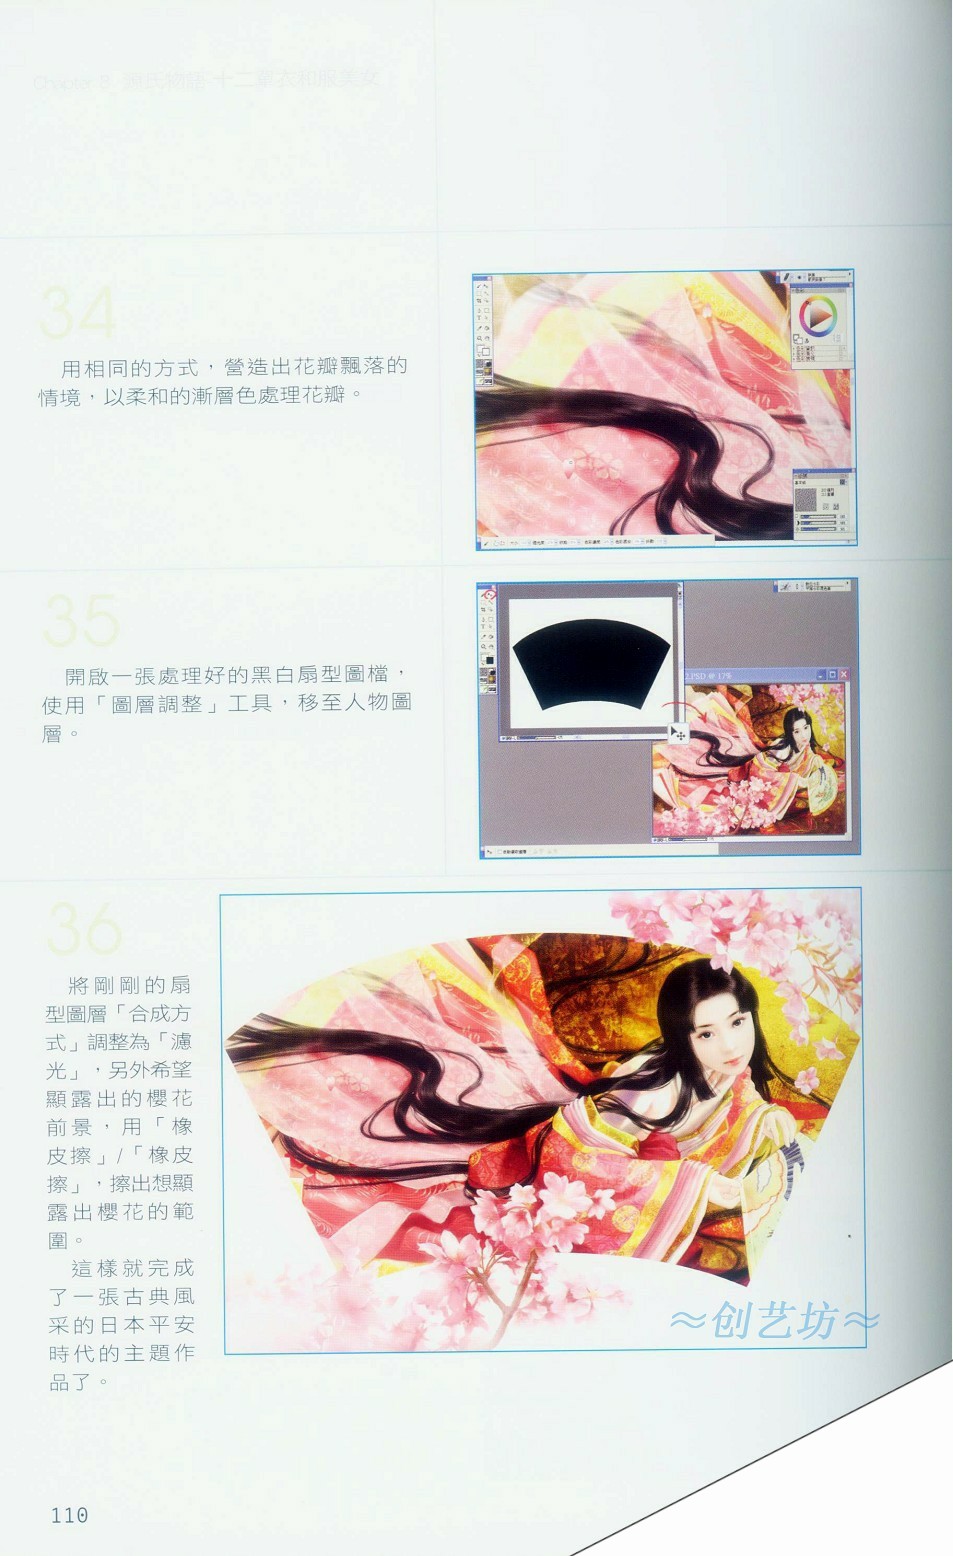 Painter绘制和服美女-插画王子技巧公开 来客网 Painter教程110.jpg